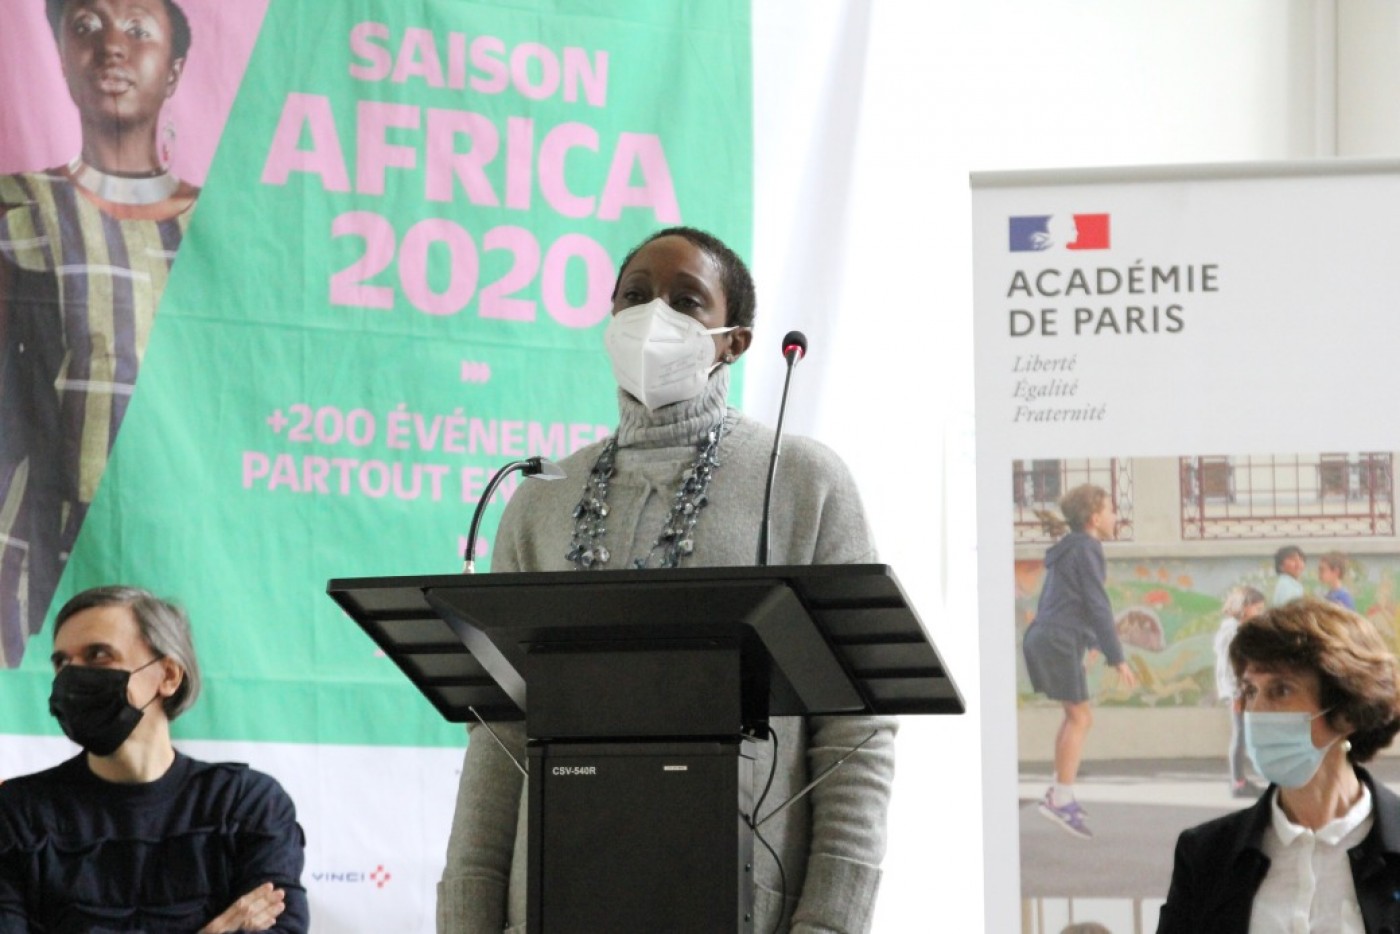 (c) Académie de Paris - N'Goné Fall - commissaire générale de la saison Africa2020 
Lancement académique de la saison Africa2020